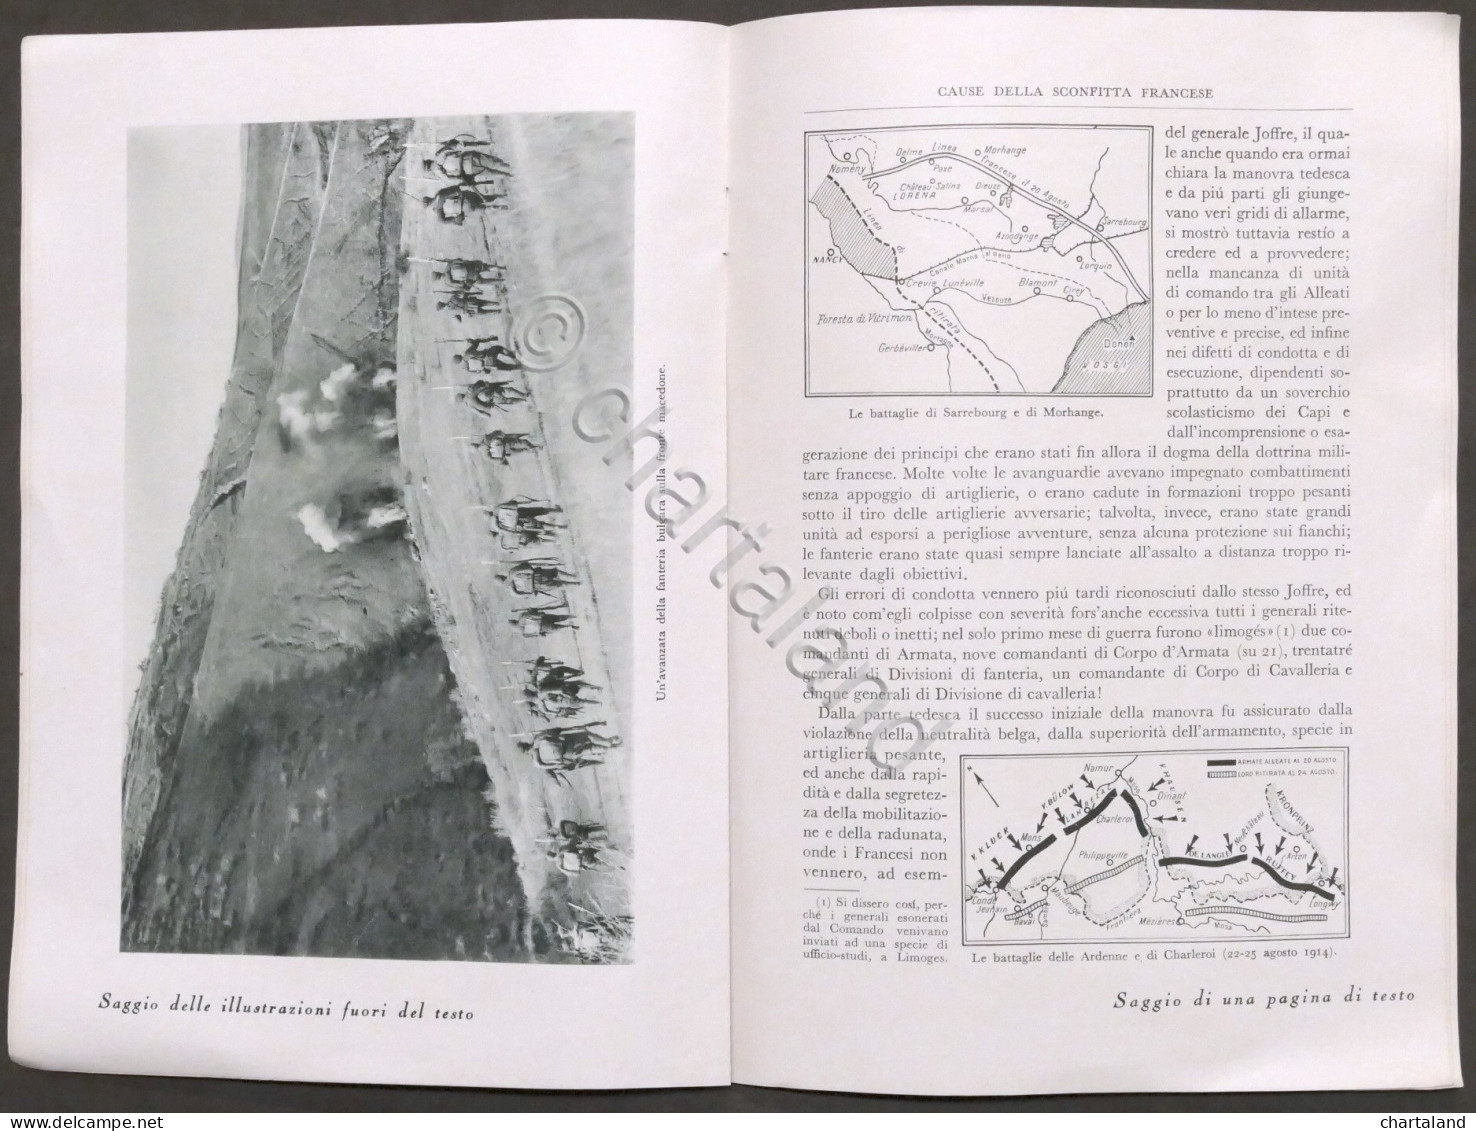 Brochure Mondadori A. Tosti - Storia Della Guerra Mondiale 1914-1918 - Ed. 1937 - Pubblicitari